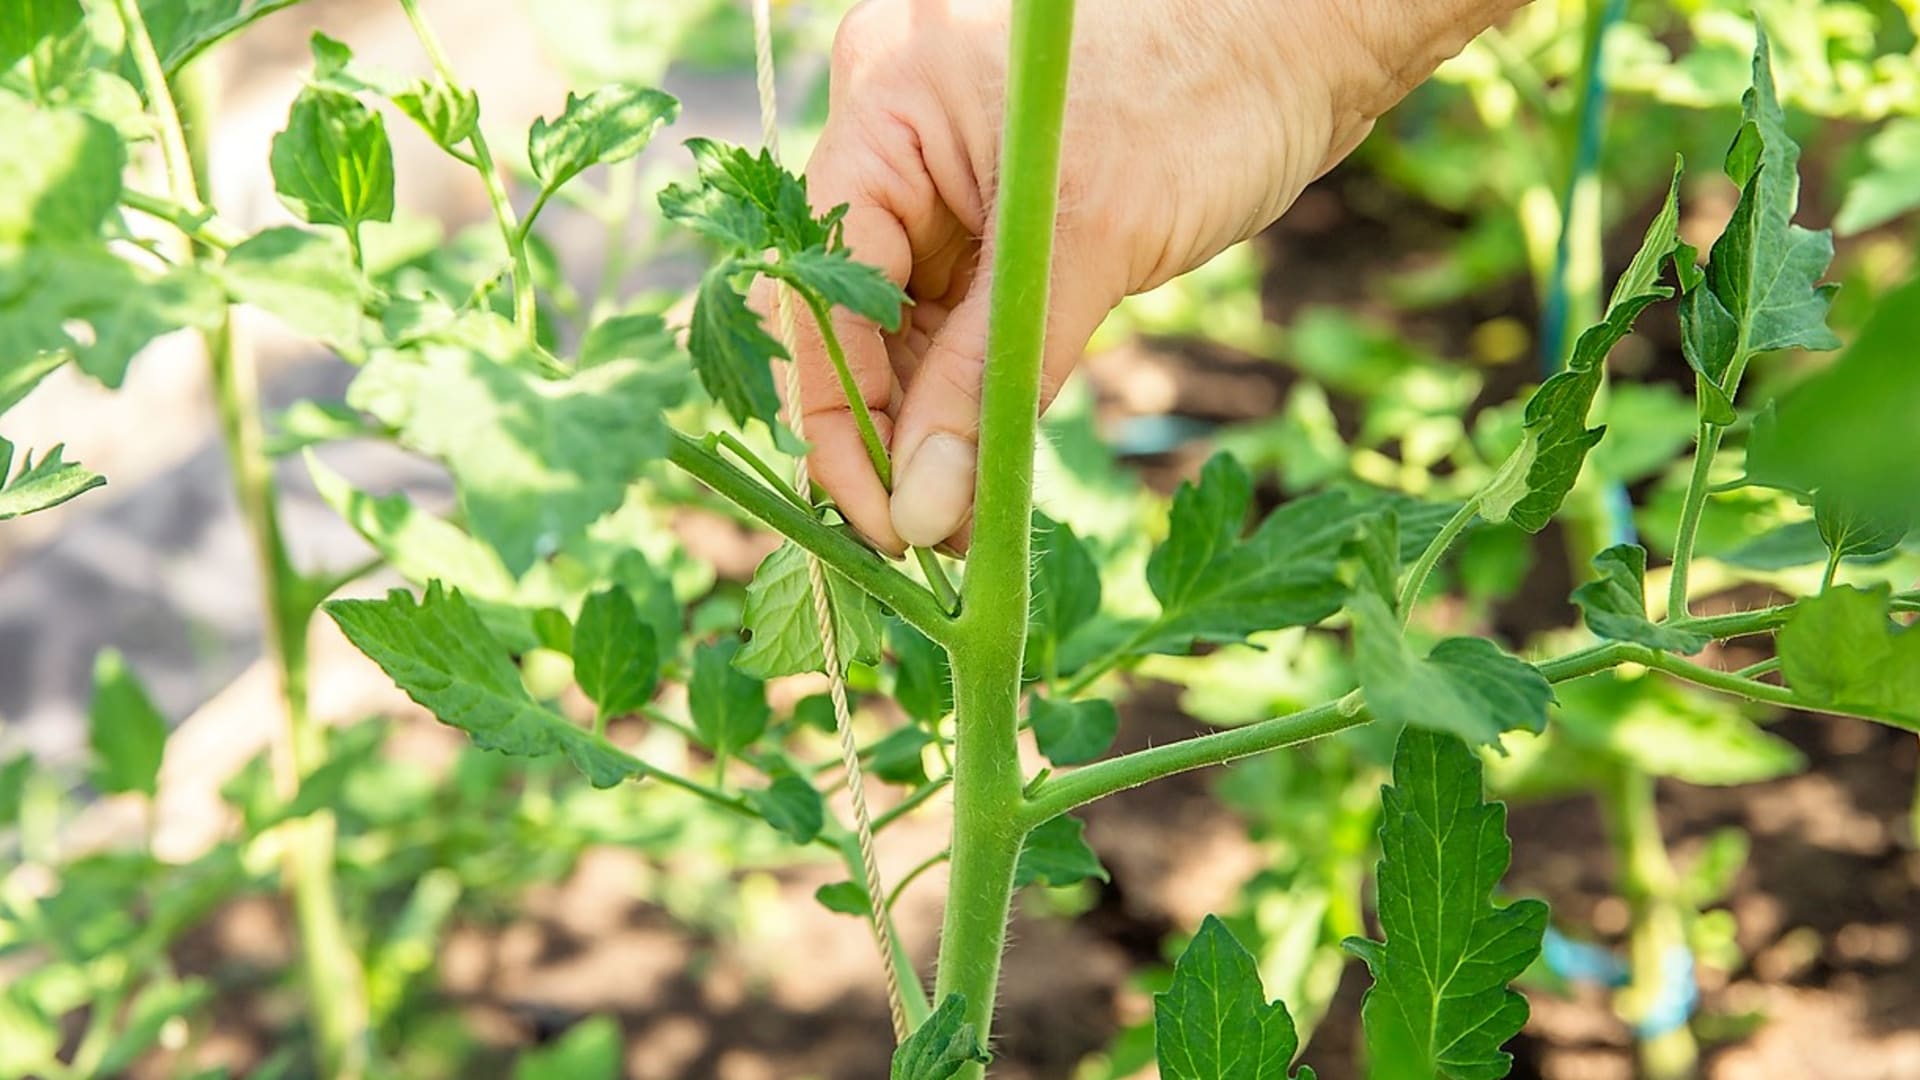 V průběhu vegetace u tyčkových rajčat odstraňujte boční výhony - zálistky. Vylamujte je rukou v co nejranějším stadiu, kdy jsou křehké a mají velikost 5-10 cm